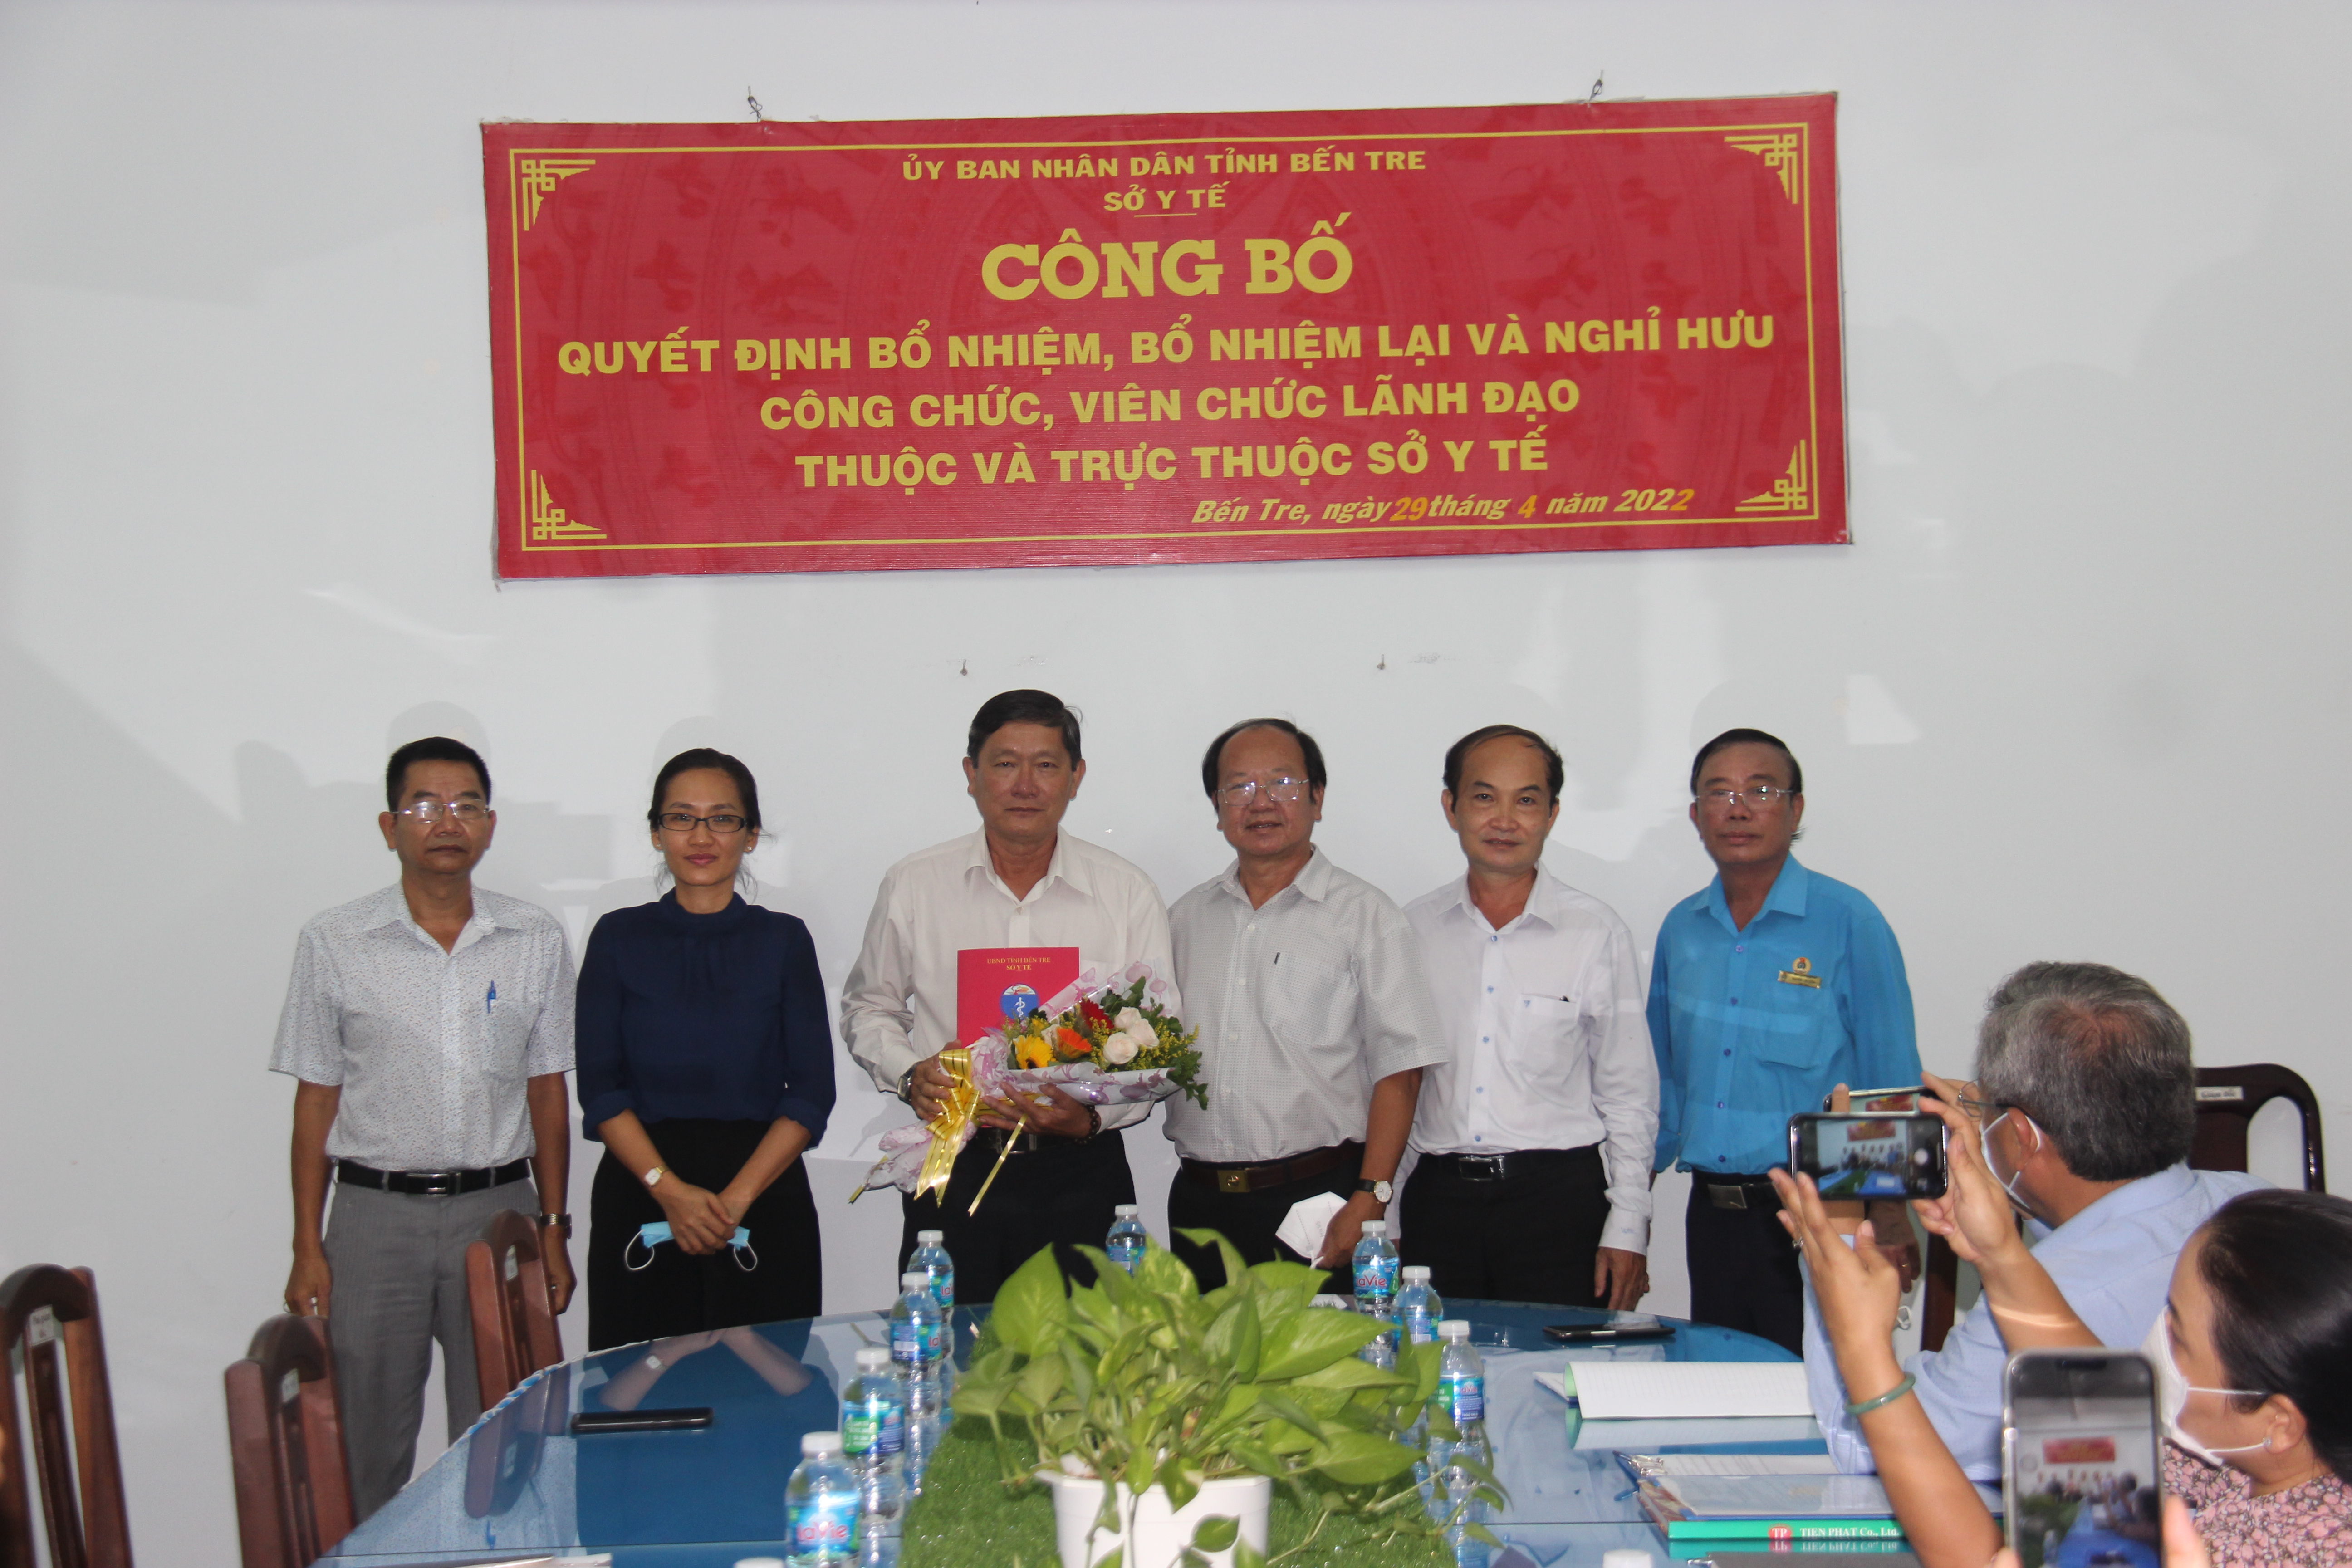 Ông Nguyễn Văn Bồng nhận quyết định, hoa từ Ban giám đốc Sở và Công đoàn Ngành